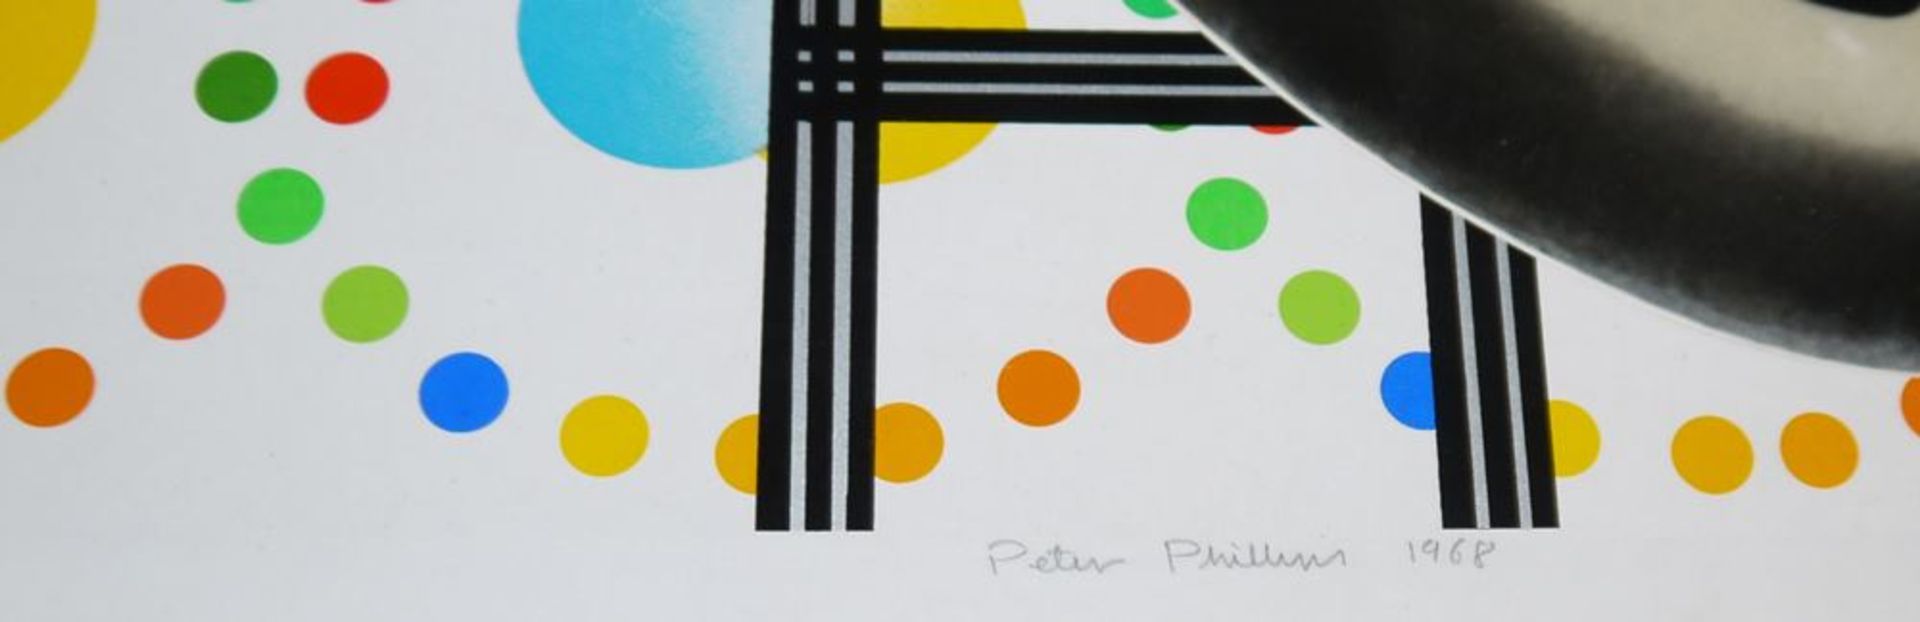 Peter Phillips, Pop art-Komposition mit Autoteilen, Farblithographie von 1968, signiert - Bild 2 aus 2